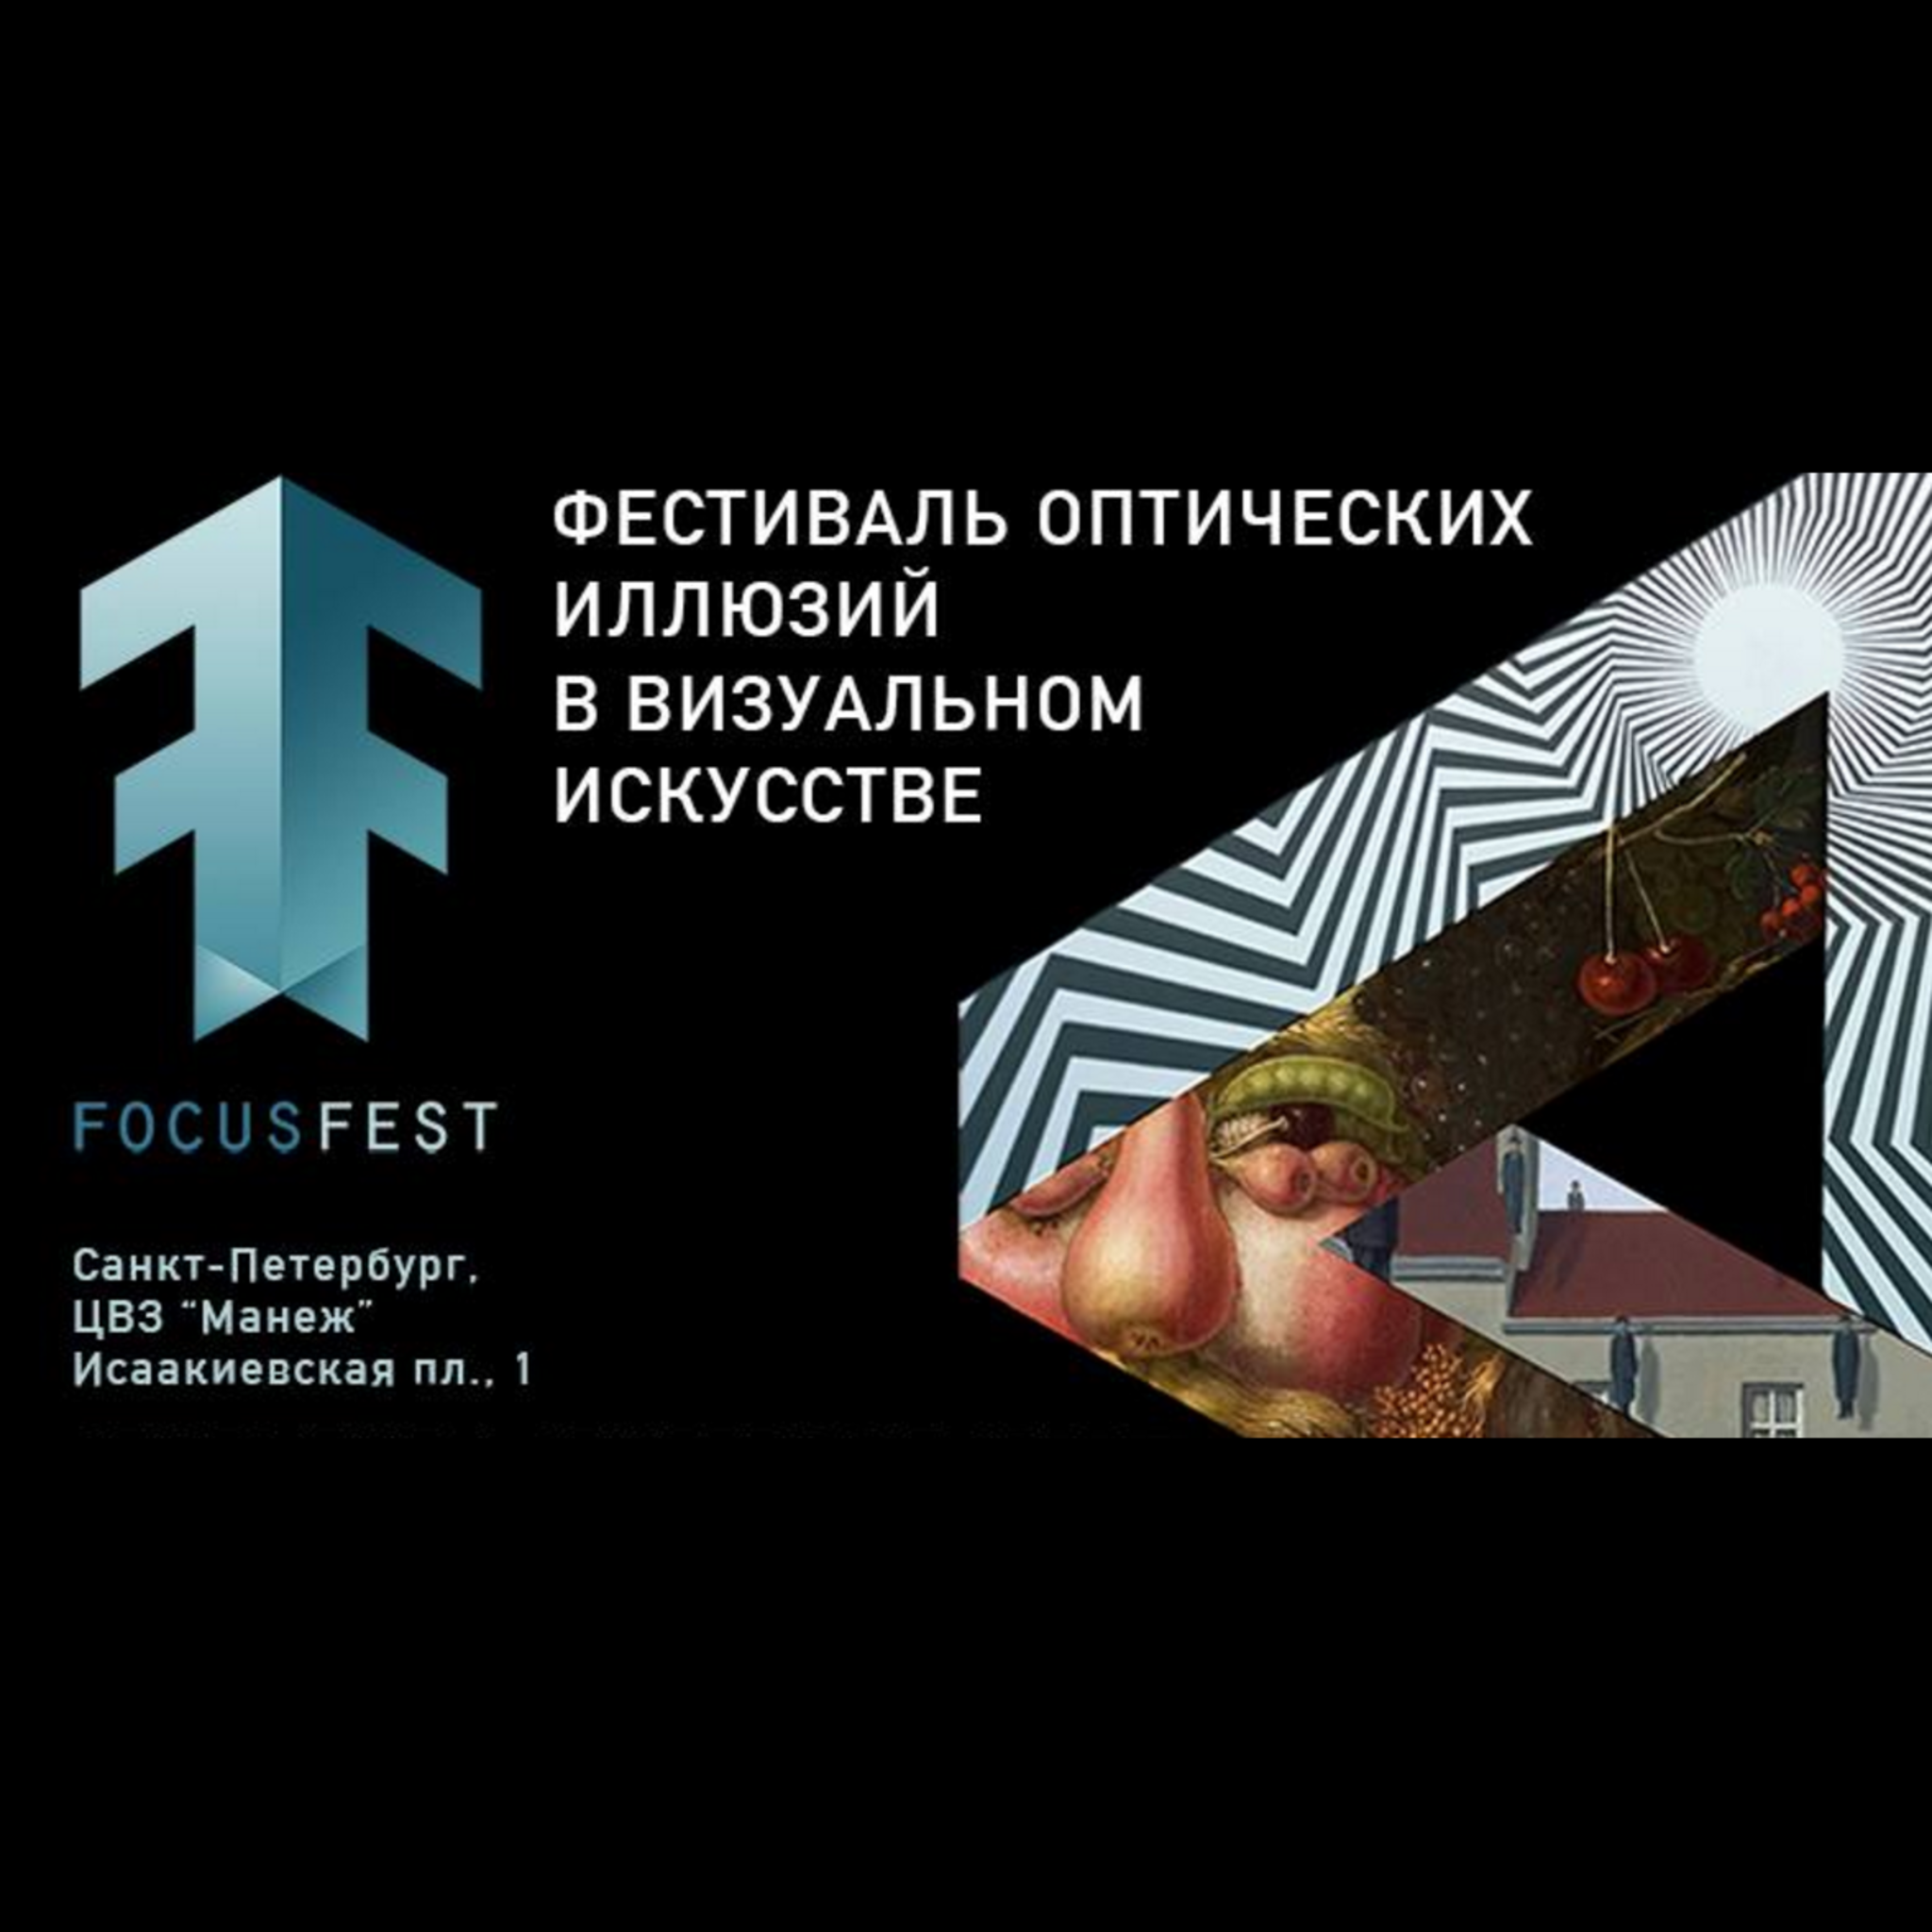 Exhibition-Festival of optical illusions in visual arts Focus Fest